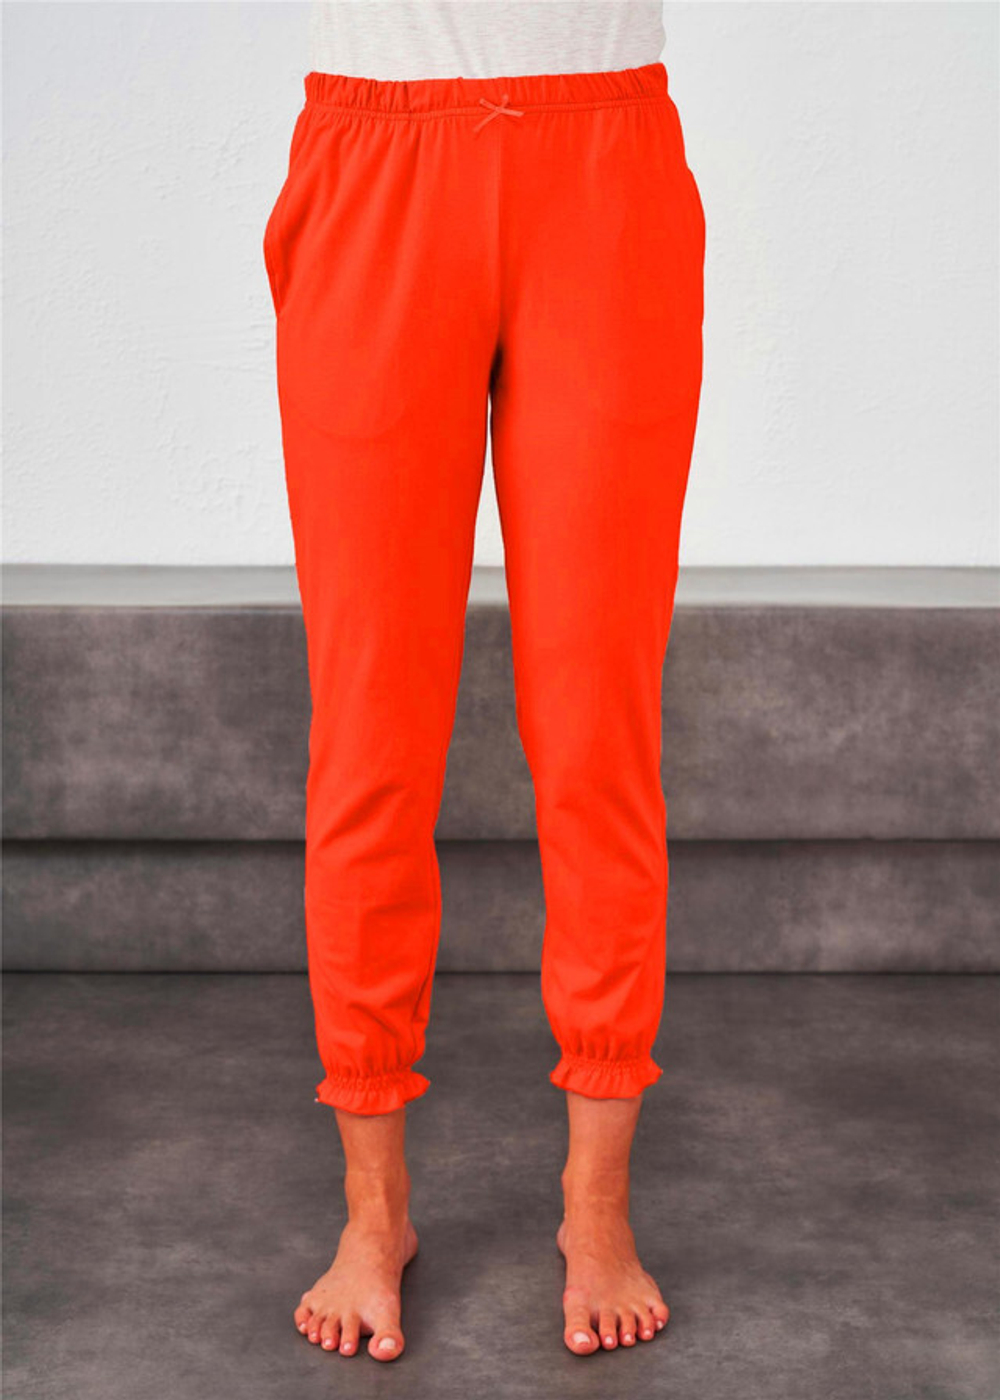 RELAX MODE / Пижамные штаны женские хлопок домашняя одежда - 09166